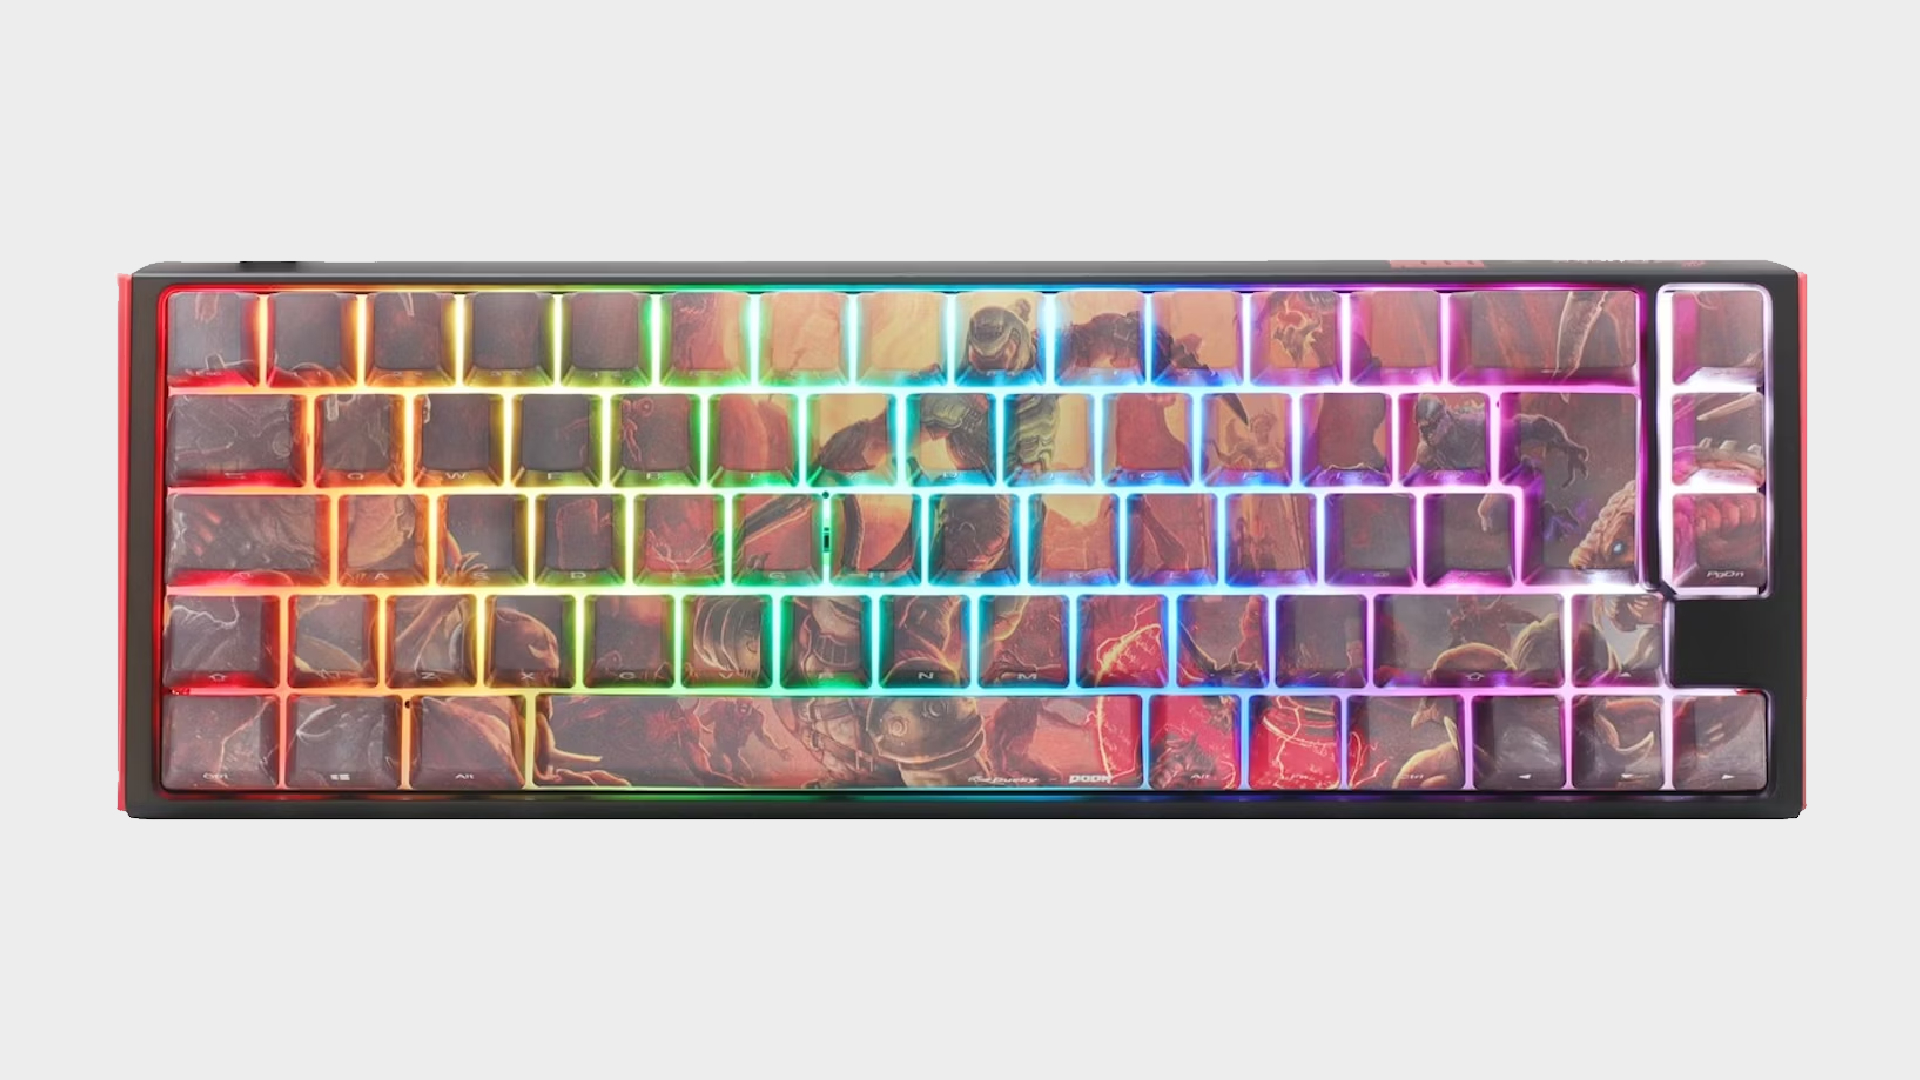 Ducky x DOOM SF 65% keyboard